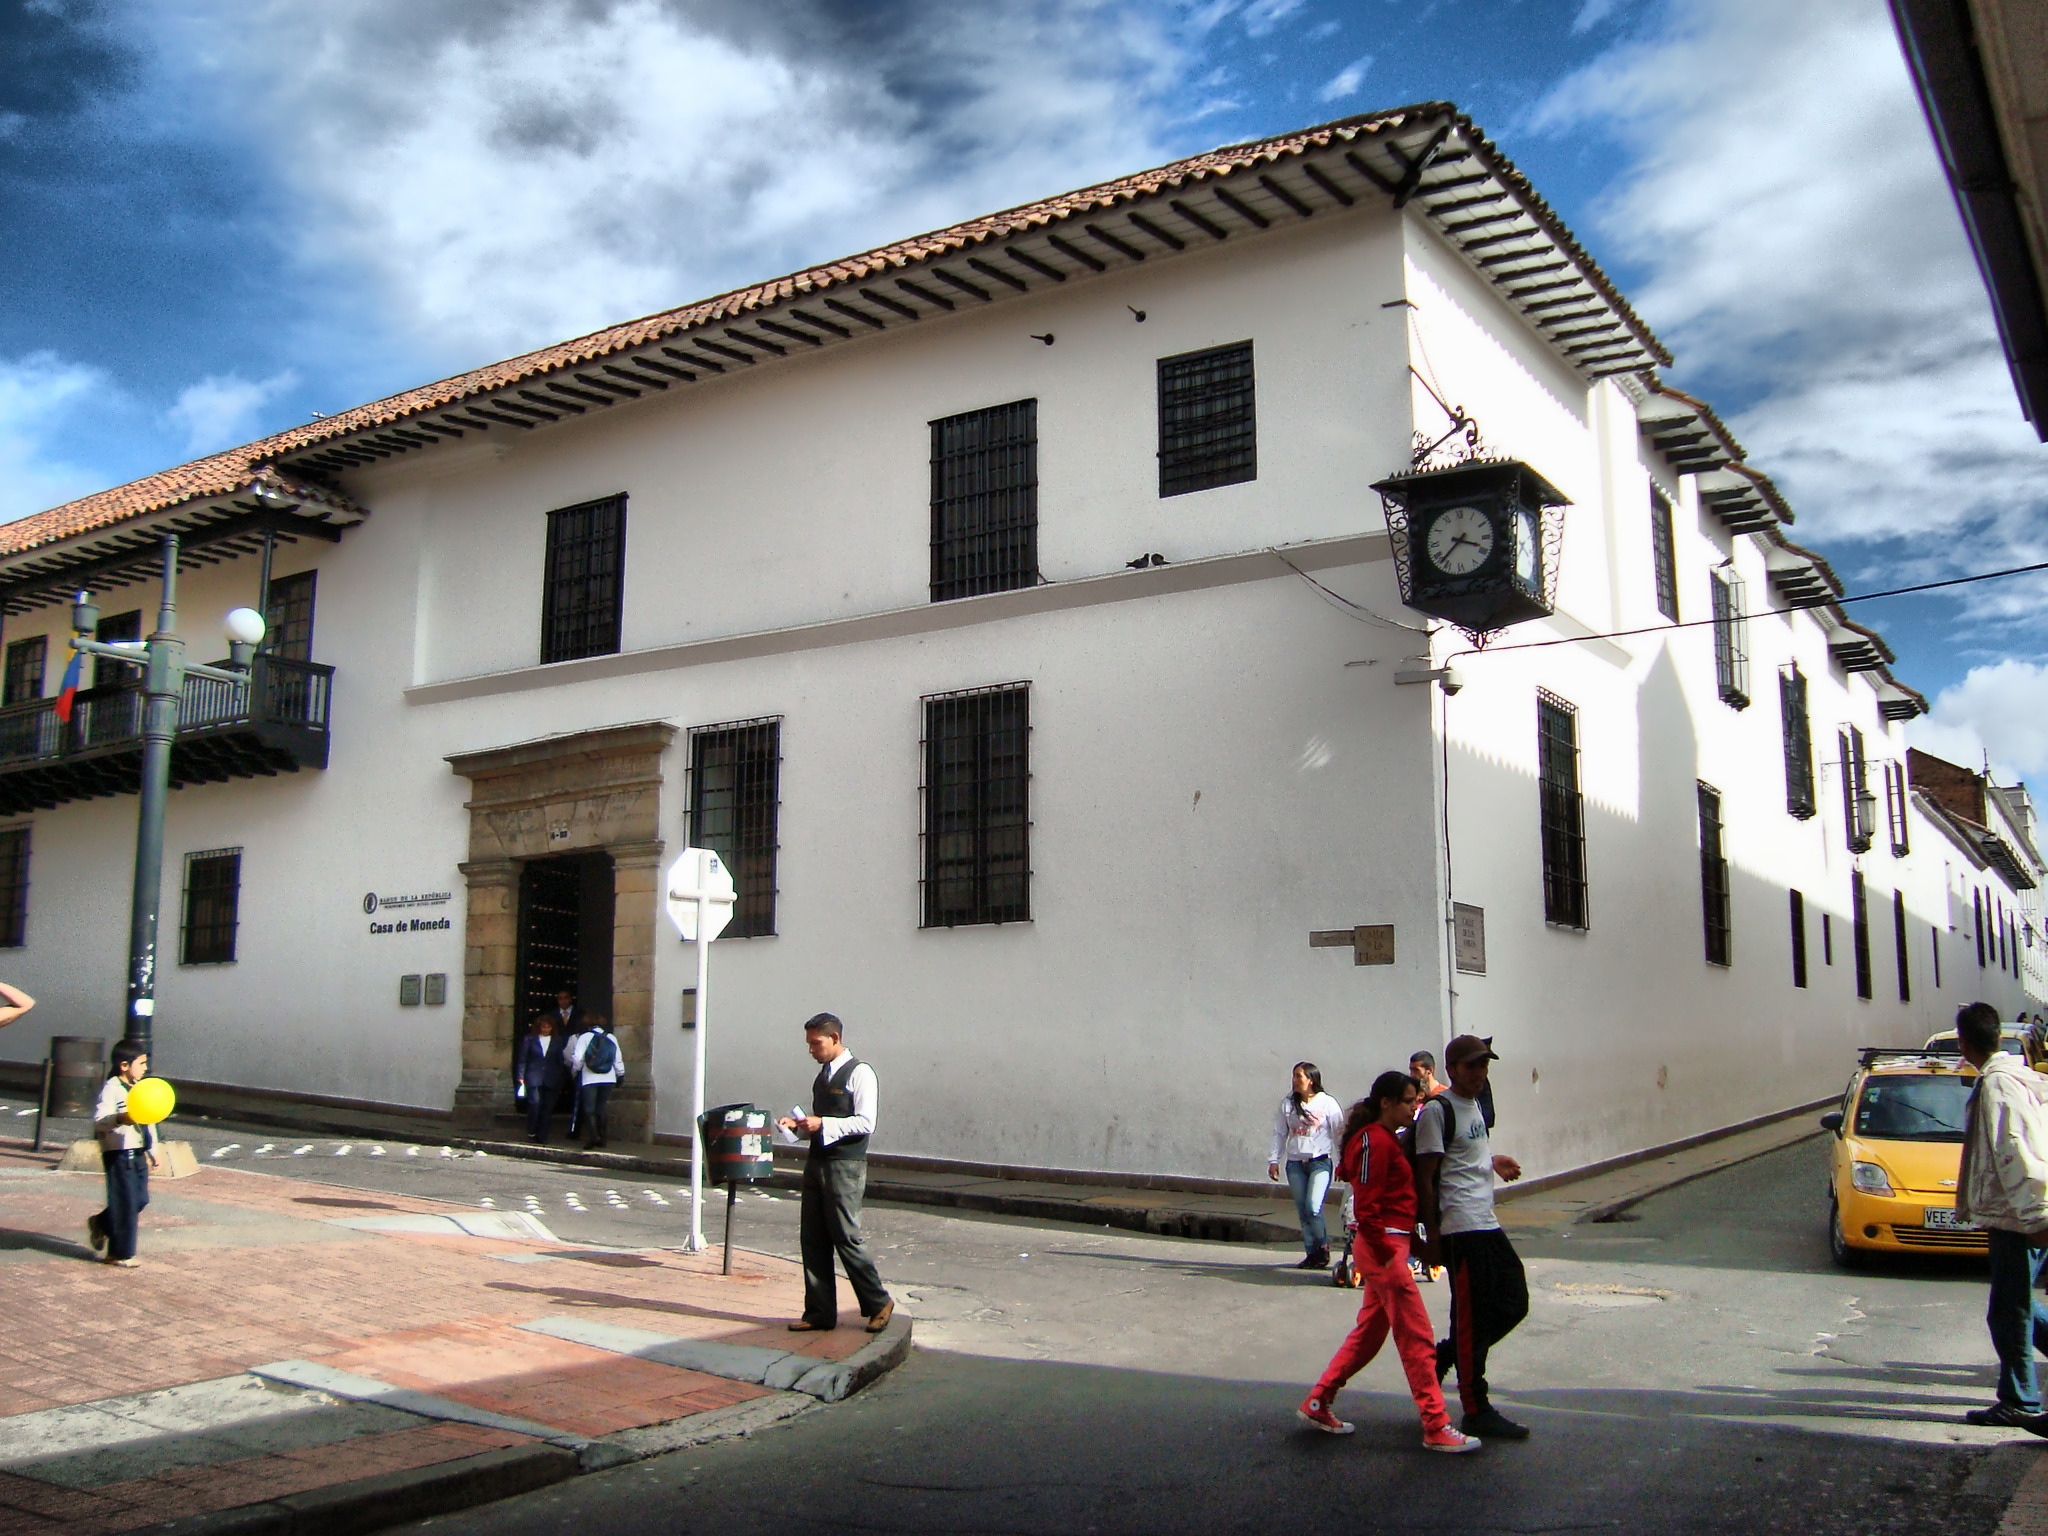 https://upload.wikimedia.org/wikipedia/commons/3/32/Casa_de_La_Moneda_2.jpg